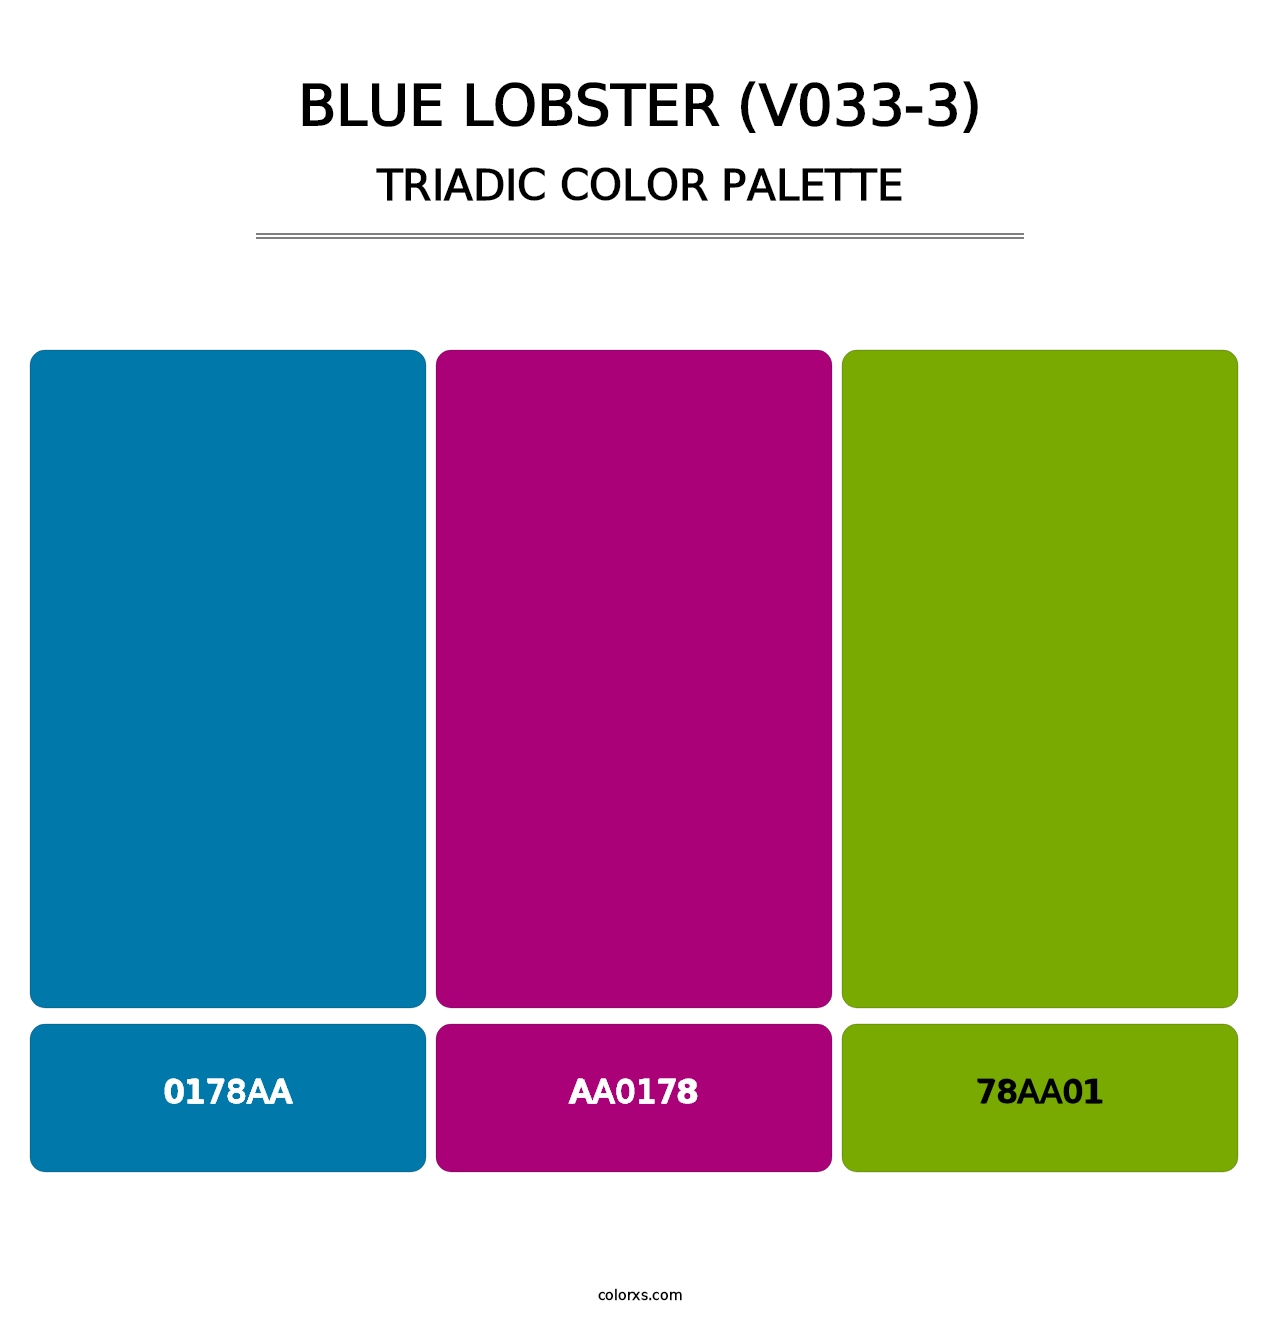 Blue Lobster (V033-3) - Triadic Color Palette